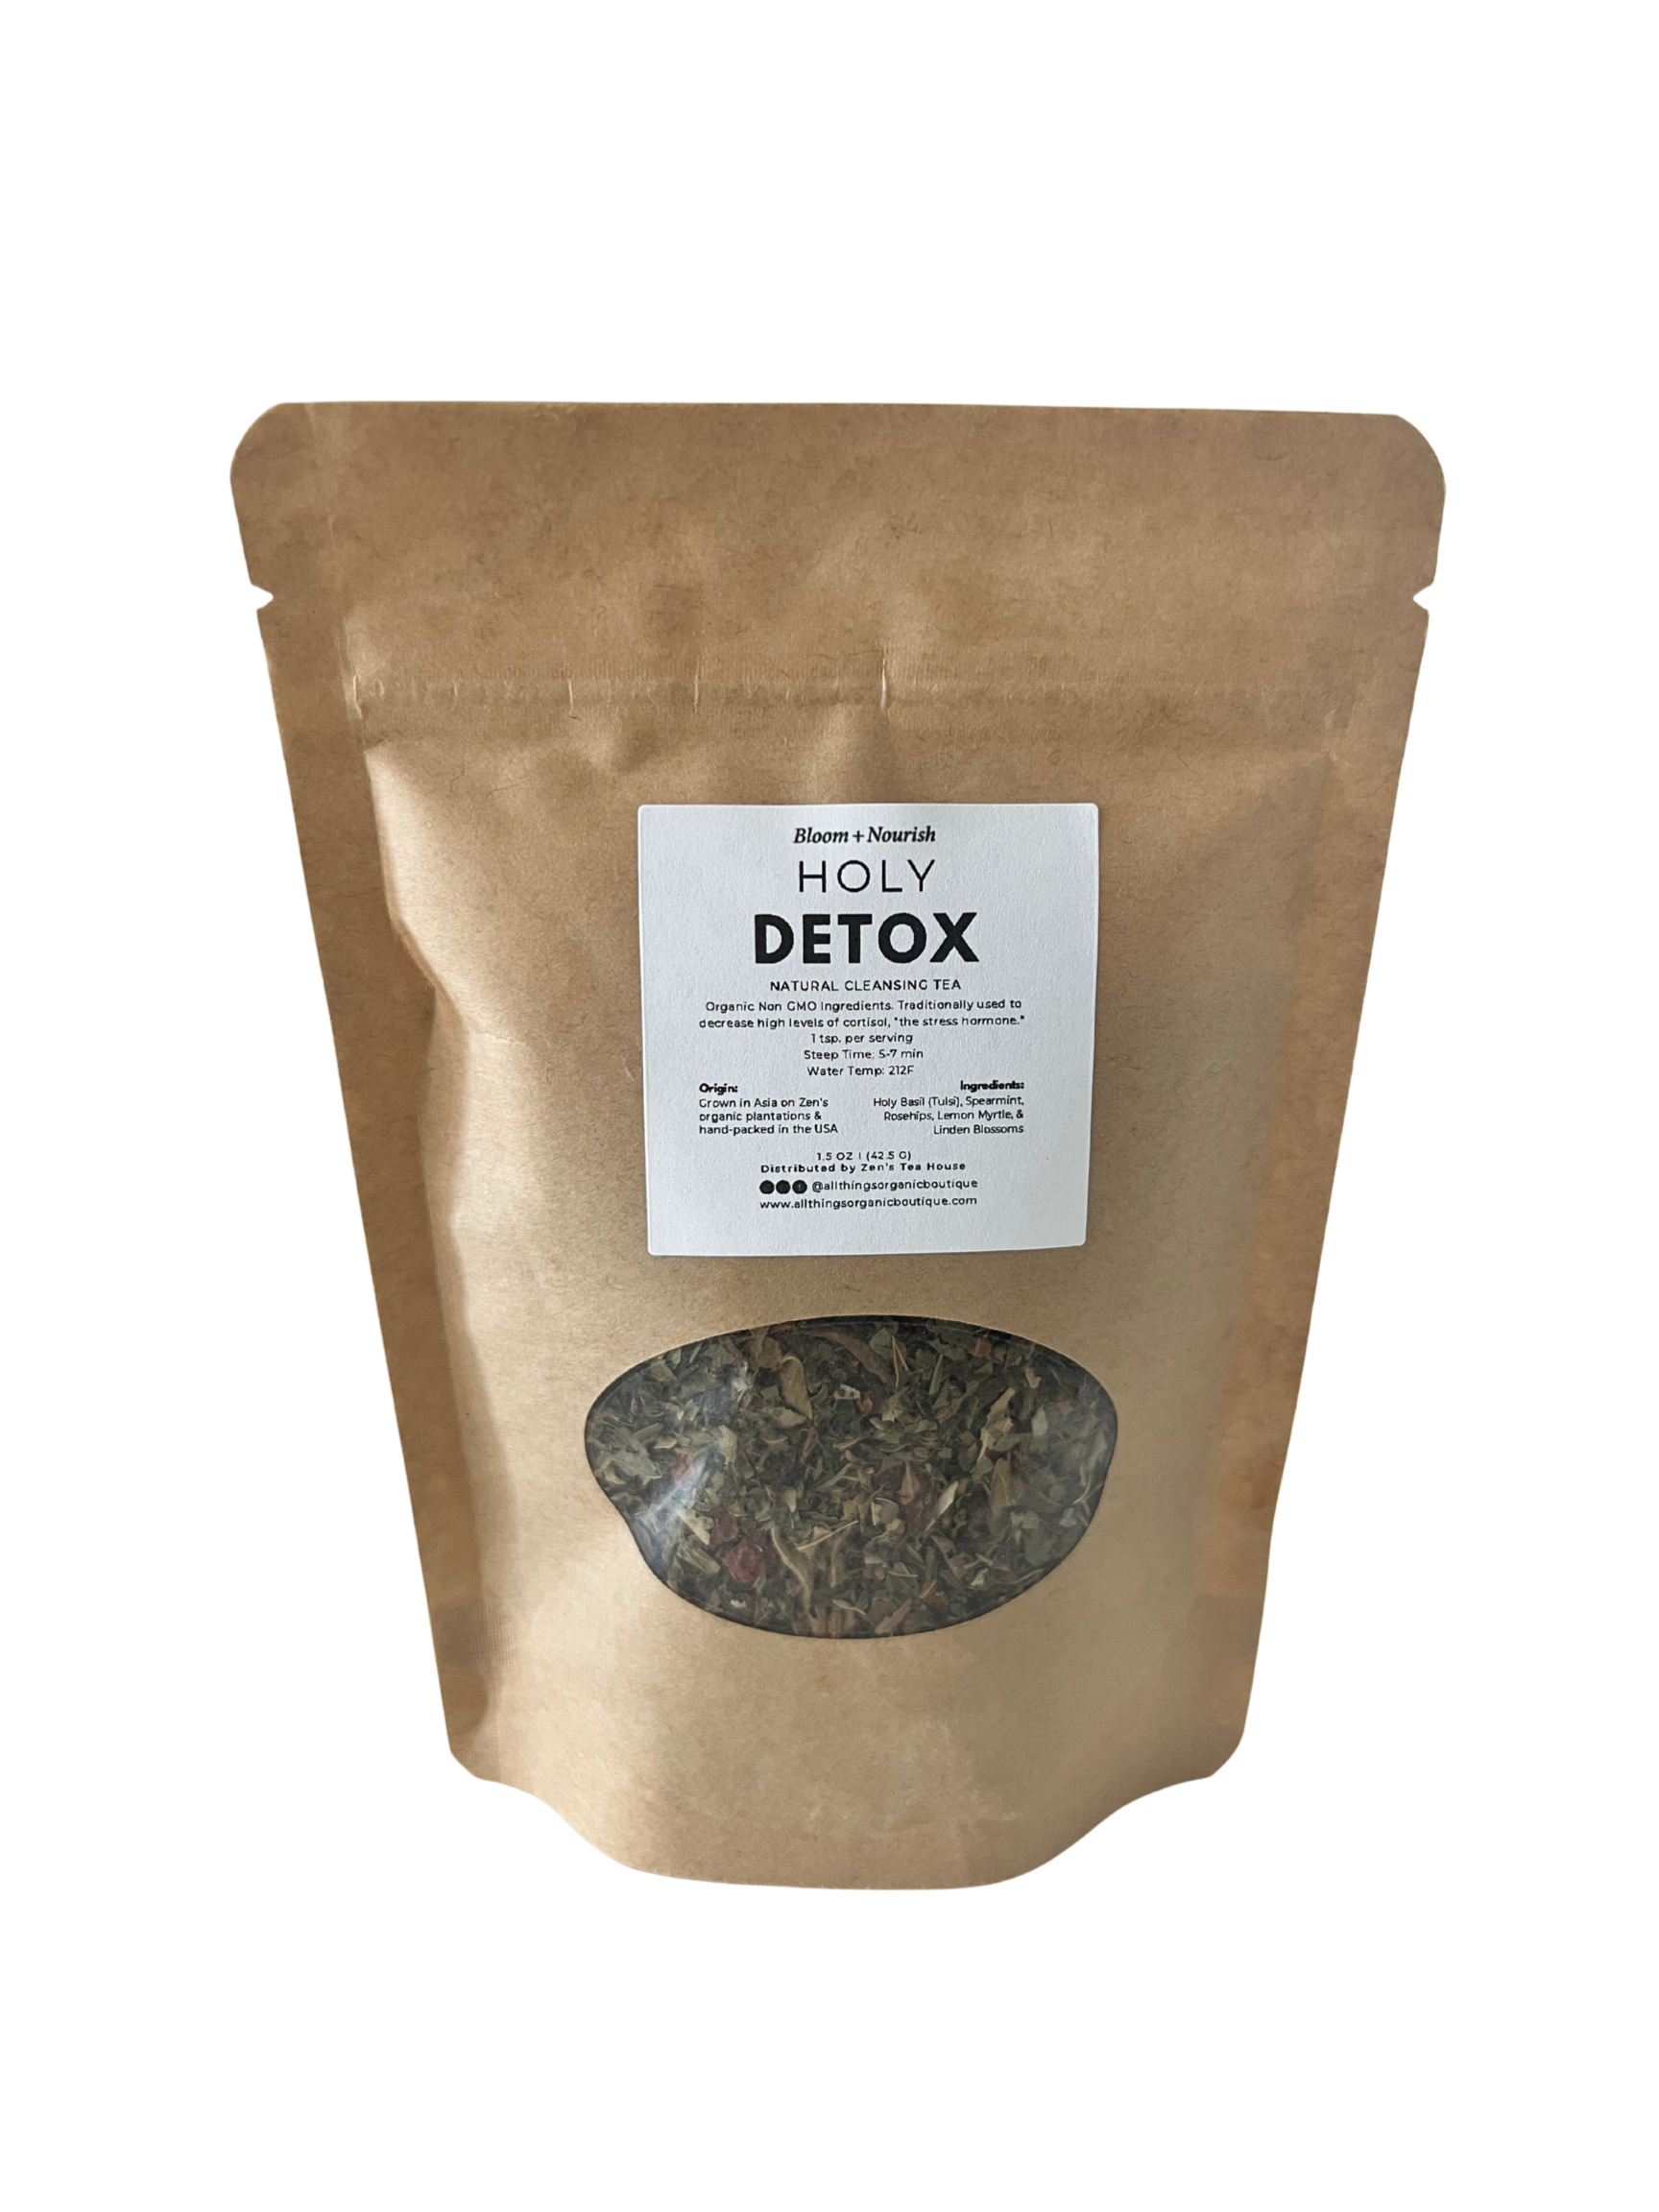 Holy Detox Organic Loose Leaf Tea is our #1 best-selling herbal blend